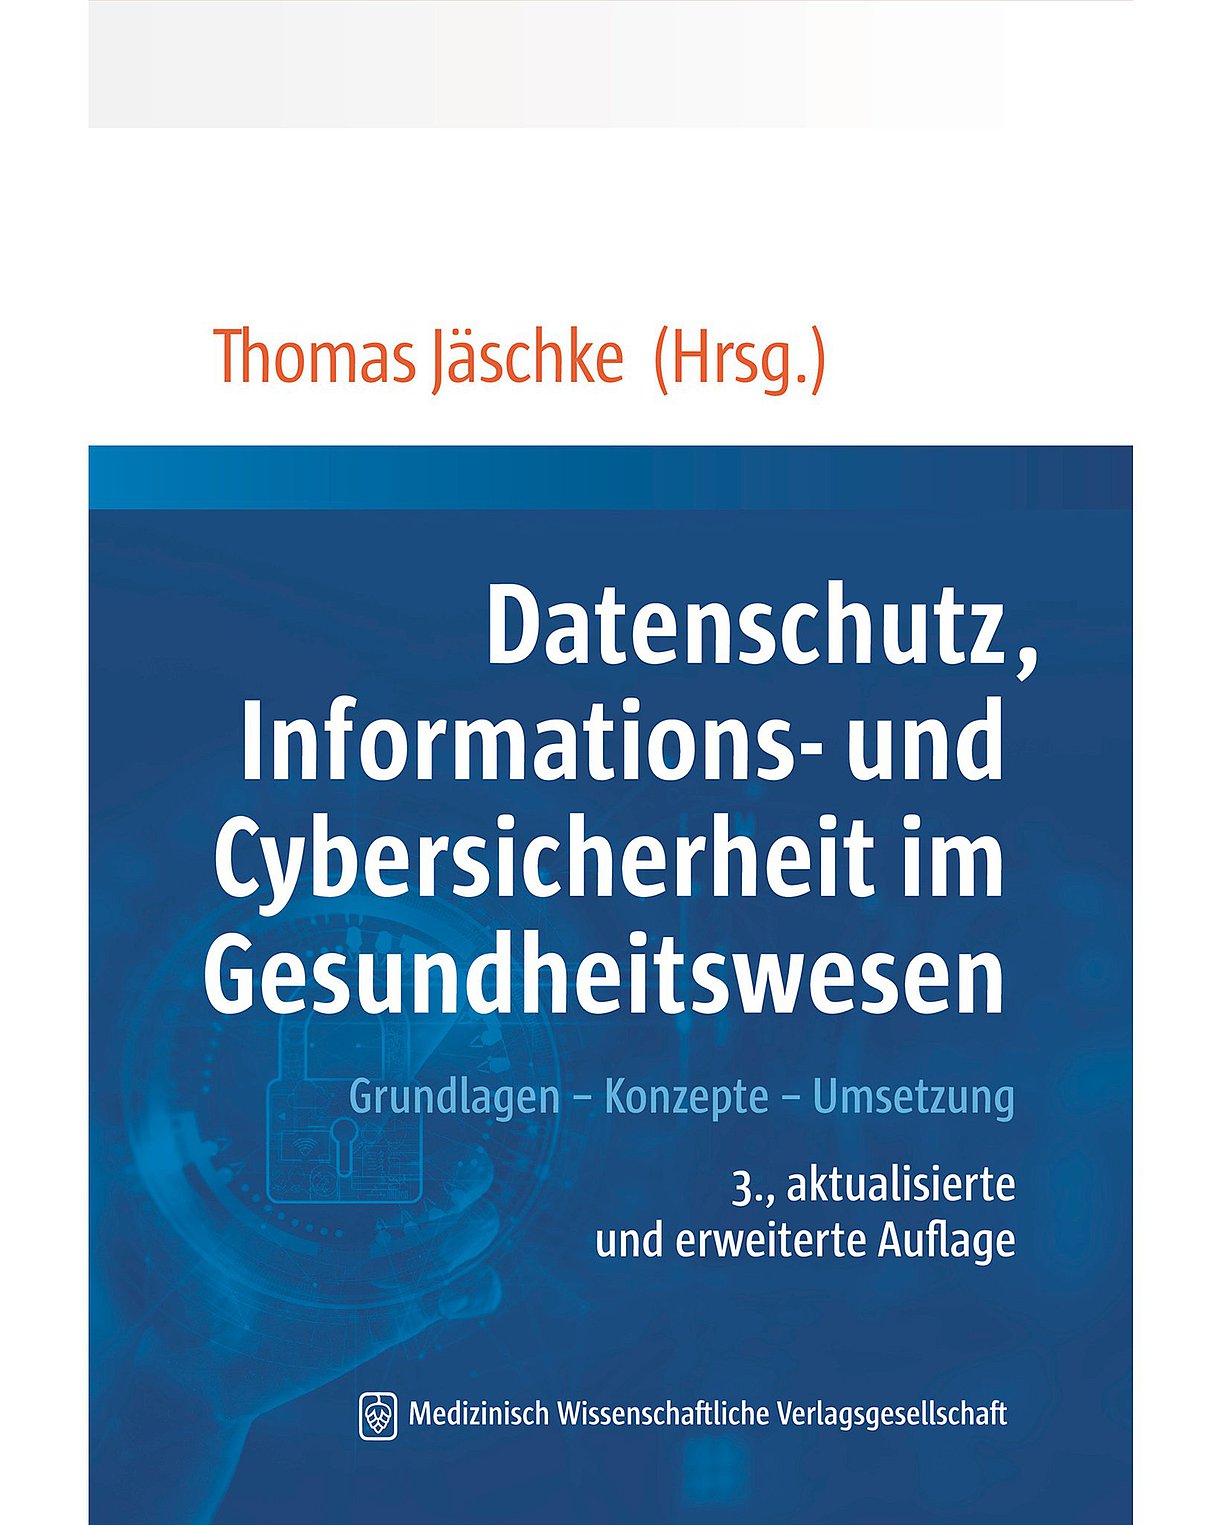 Cover des Buches "Datenschutz, Informations- und Cybersicherheit im Gesundheitswesen" in blauer und weißer Farbe